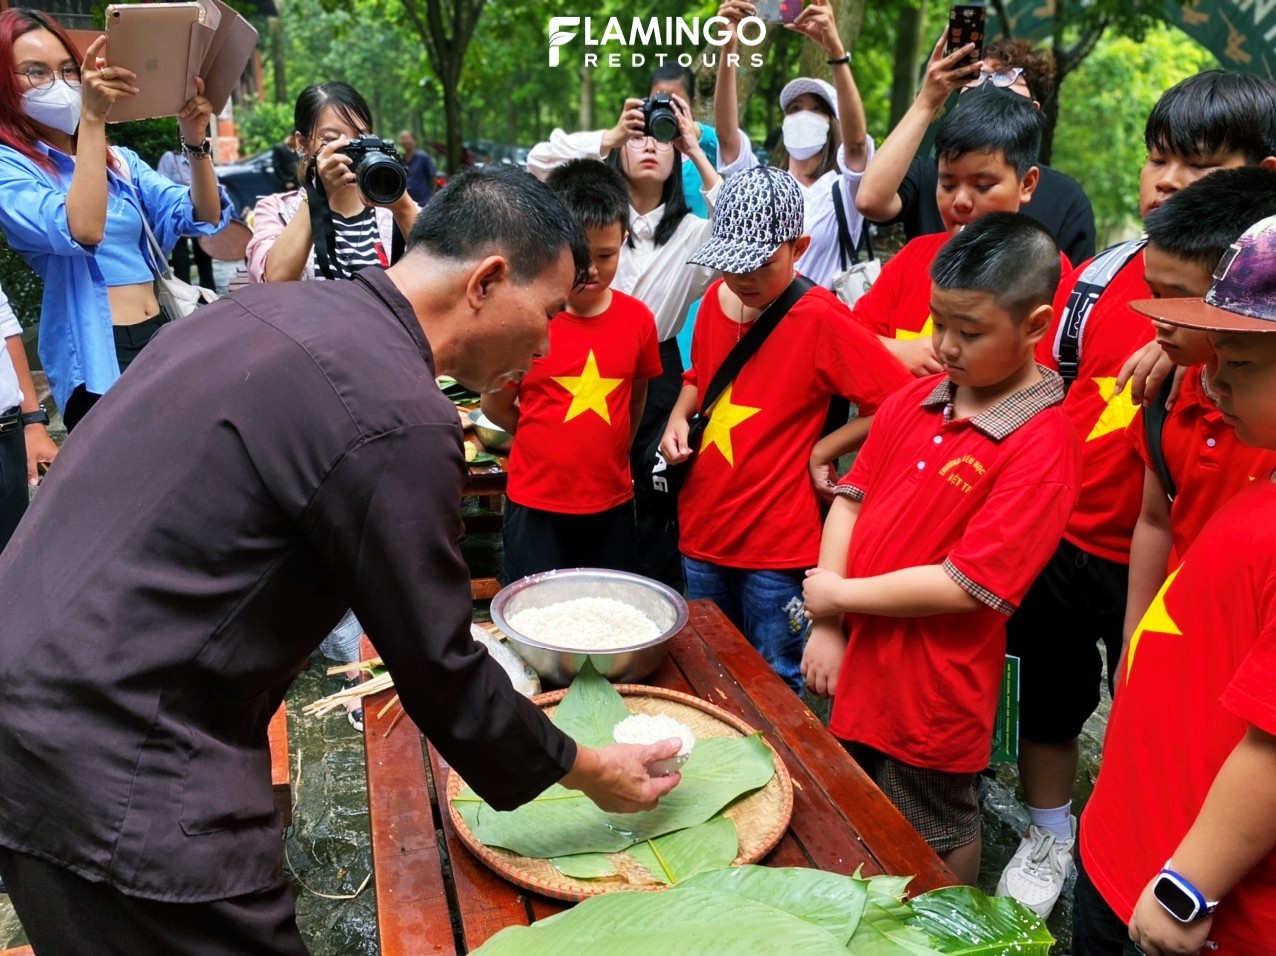 Tham gia tour “Hướng về nguồn cội”, các em học sinh được khám phá văn hóa đặc sắc của người dân bản địa khi được tự tay gói bánh chưng, giã bánh giầy